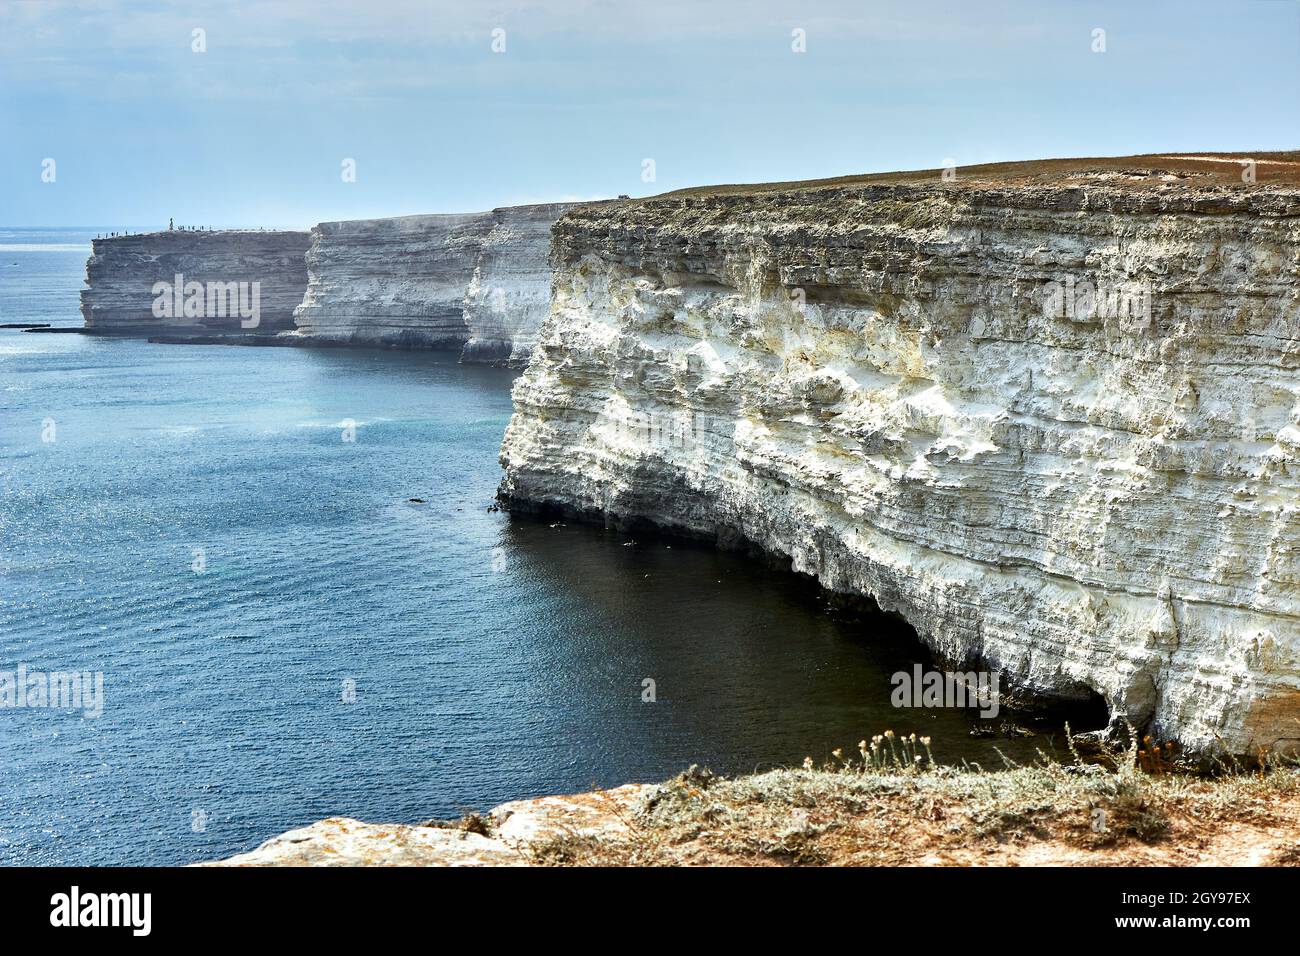 Kap am Meer. Seeseite, Horizont, ruhiges blaues Meer, ruhiges blaues Meer. Kreidefelsen, Kap Tarkhankut, Krim. Die natürliche Textur des weißen Steins. Stockfoto